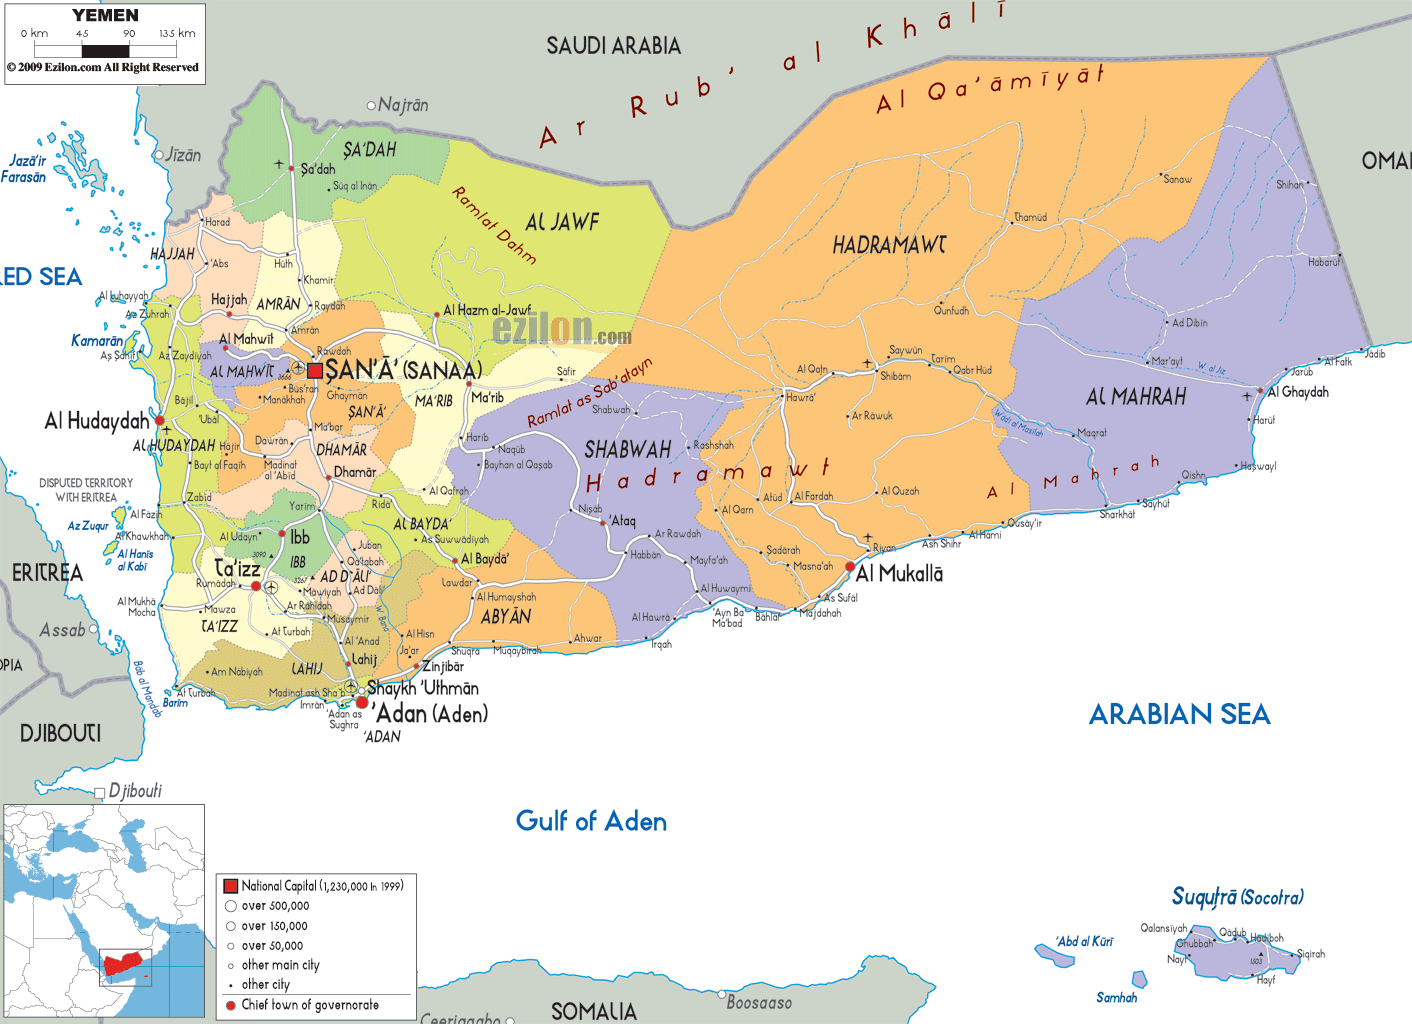 جزئیات سند توافق ریاض میان دولت مستعفی یمن و شورای انتقالی جنوب